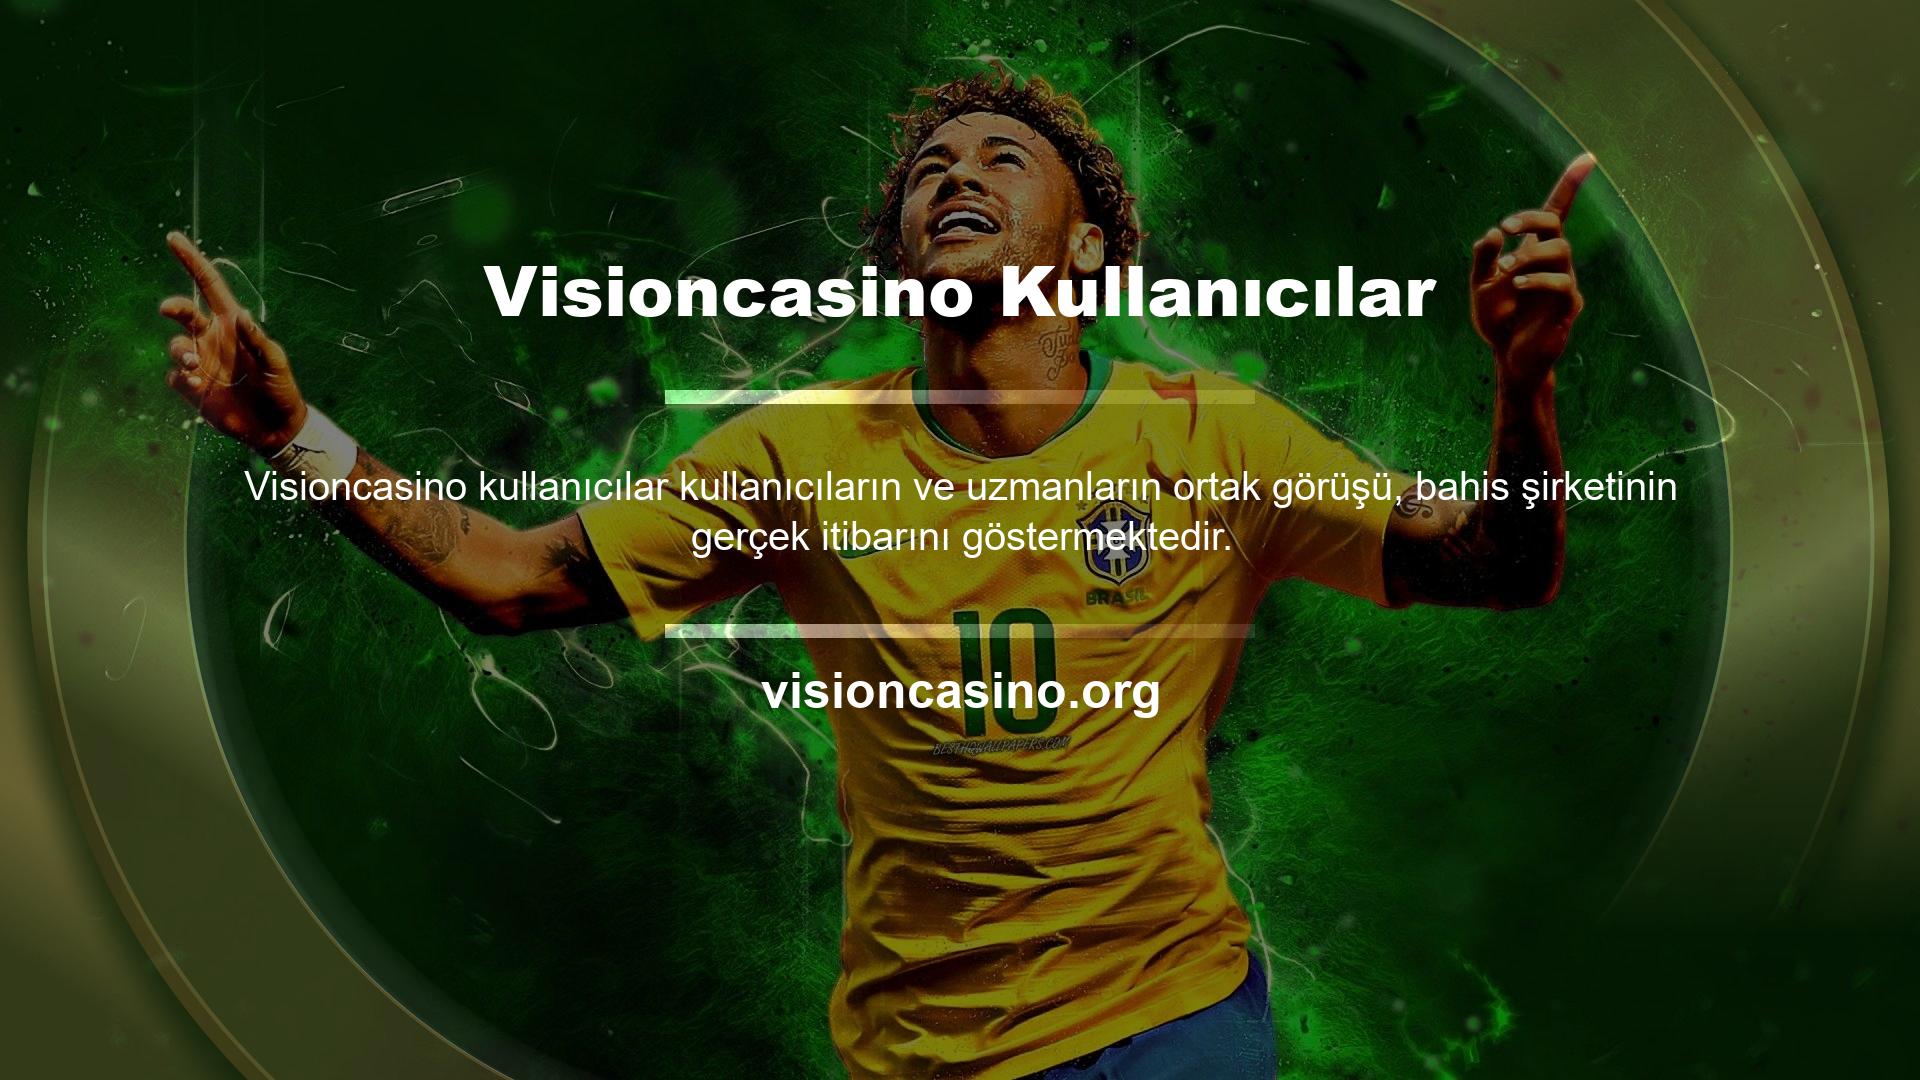 Visioncasino için gerçek oyuncuların ve oyun uzmanlarının görüşleri, sunulan hizmetlerin güvenilirliğini ve kalitesini teyit etmektedir